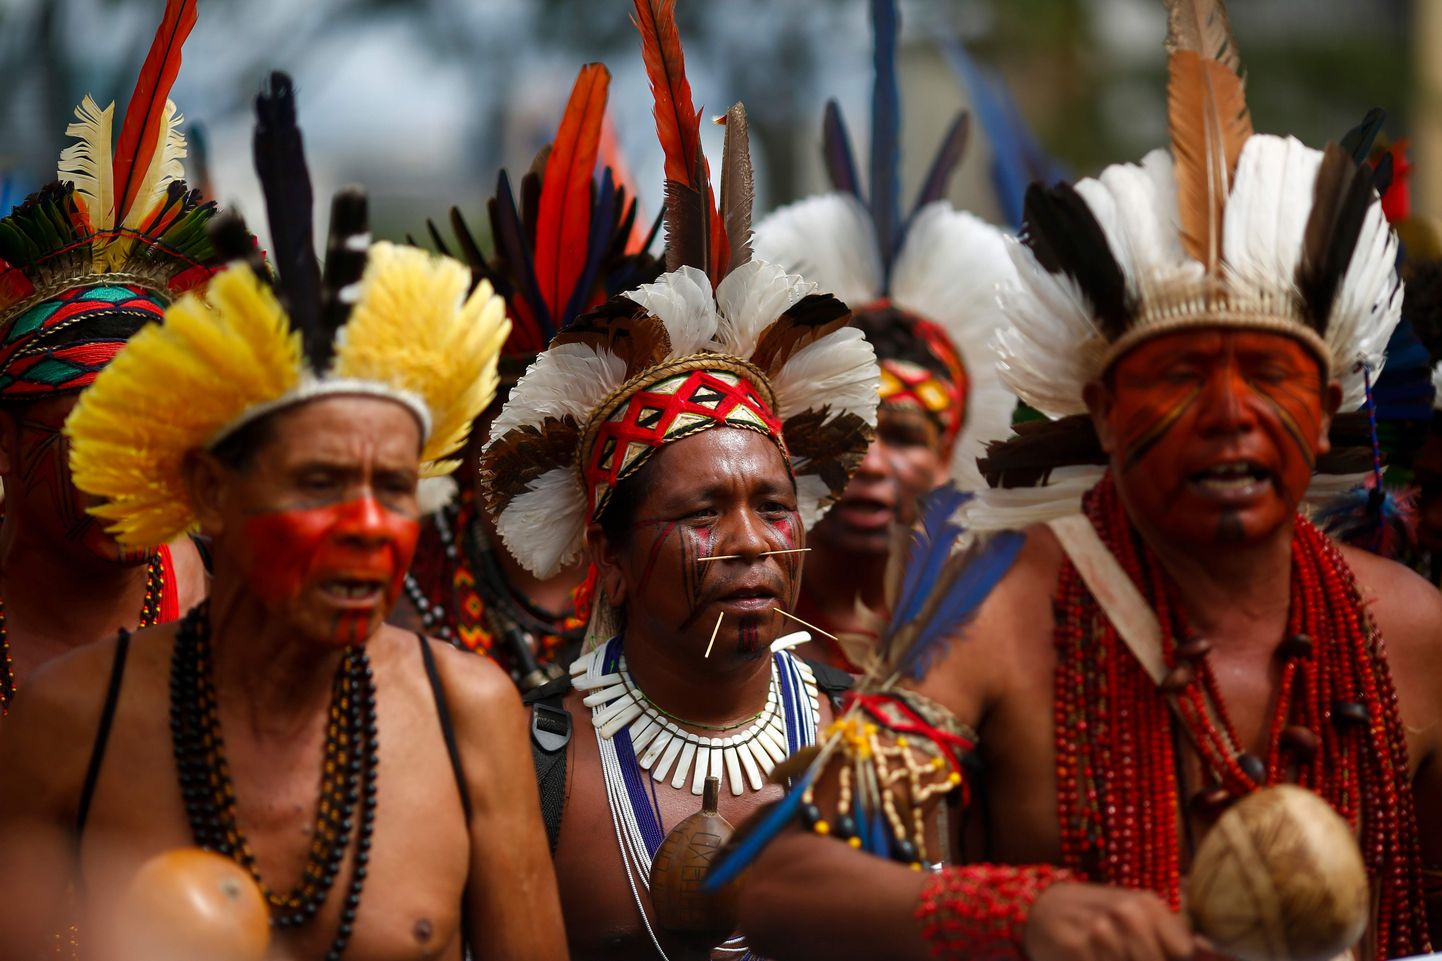 Brasiilia põlisrahvaste hõimujuhid avaldasid 11. märtsil meelt, nõudes oma territooriumi demarkeerimist. Tuntud fotograaf Sebastião Salgado algatas kampaania, mille eesmärk on suunata võime astuma rohkem samme põliselanike kaitseks koroonaviiruse eest.